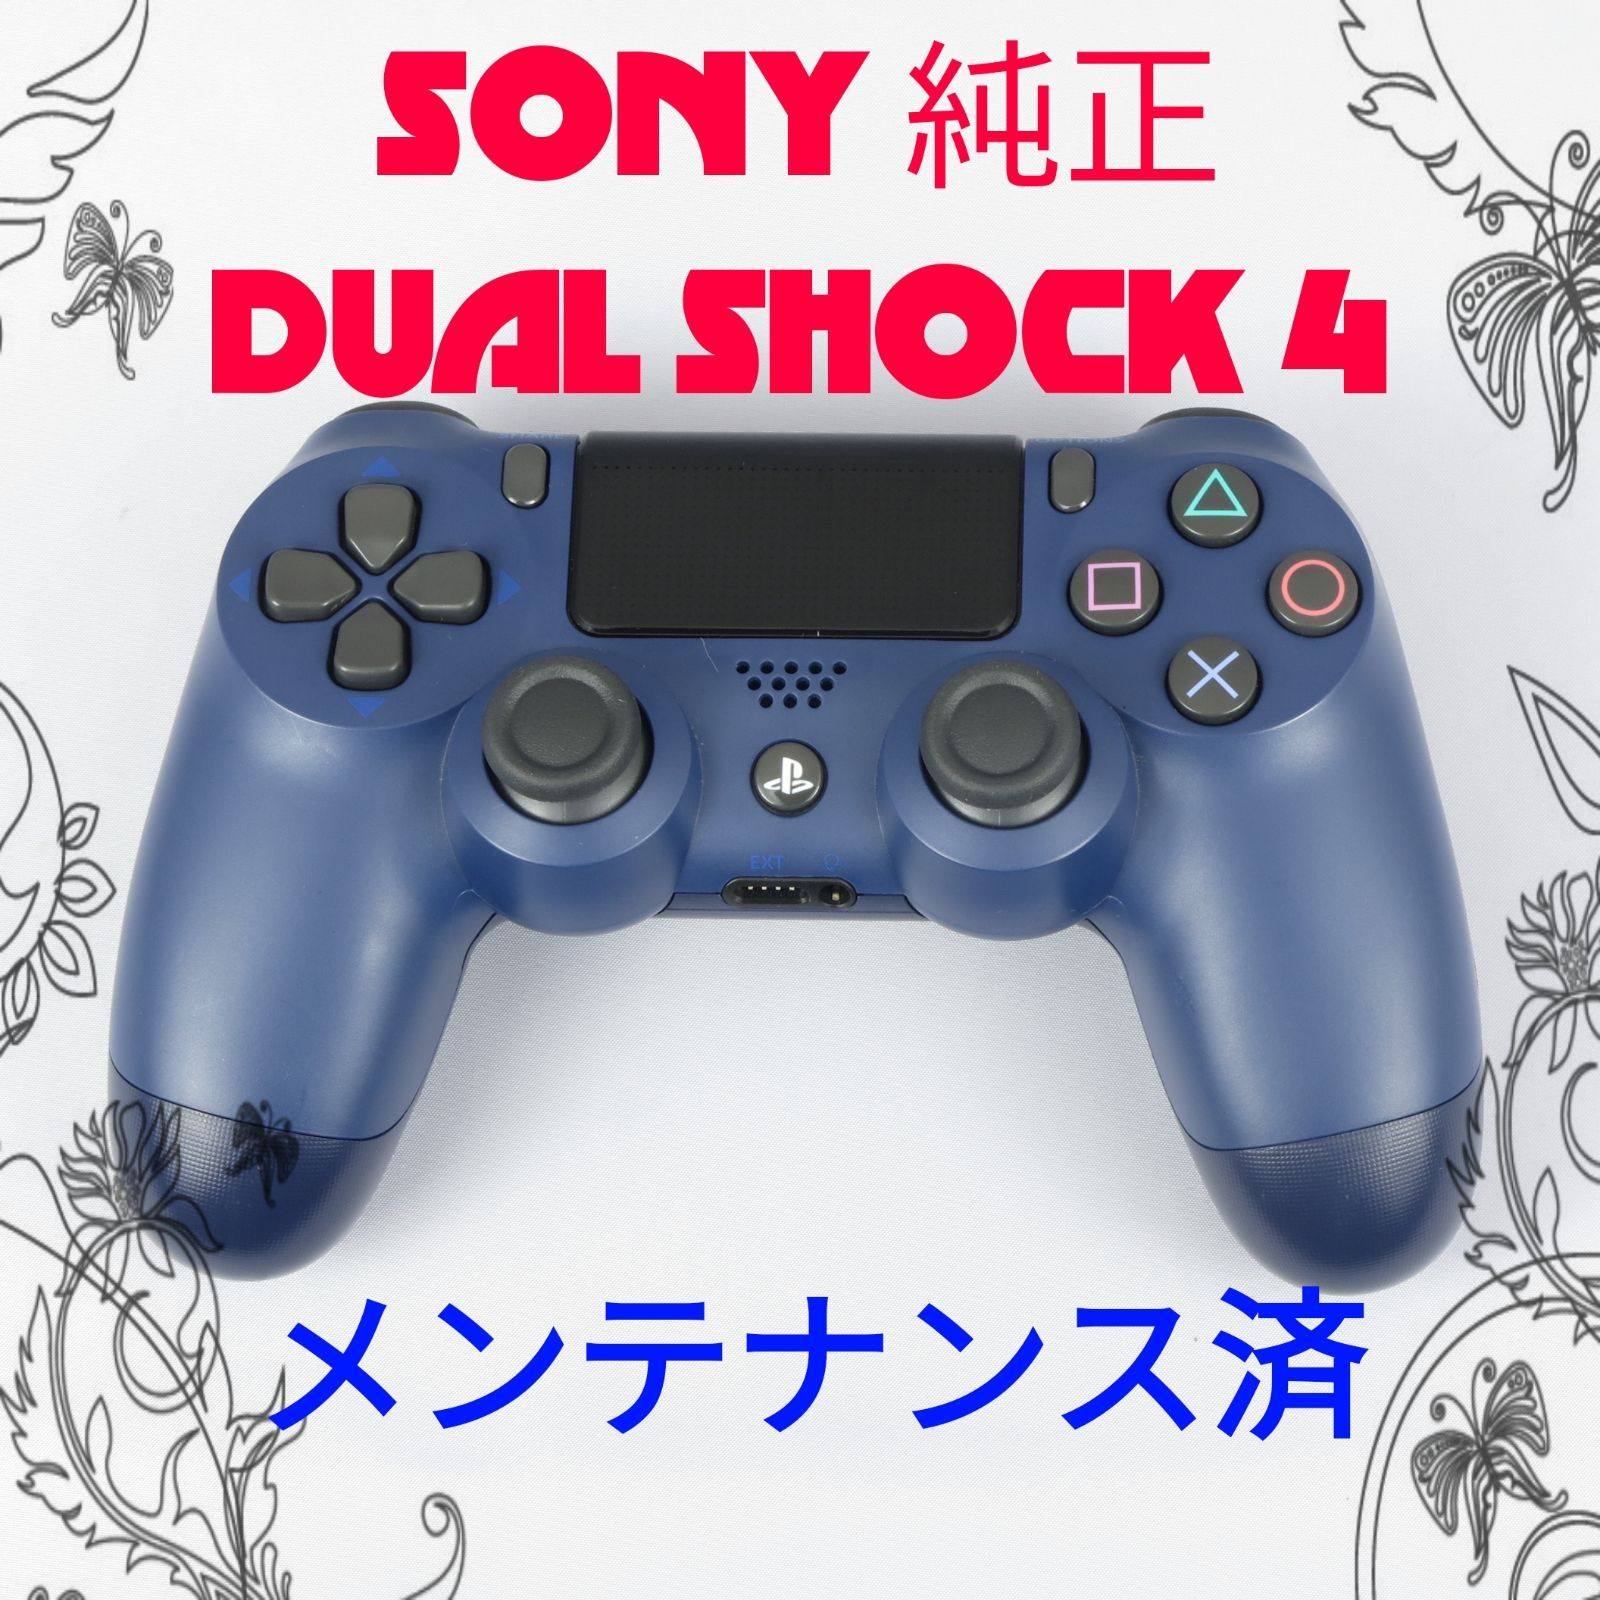 【新品、未開封】PS4 ワイヤレスコントローラー DUALSHOCK4 純正